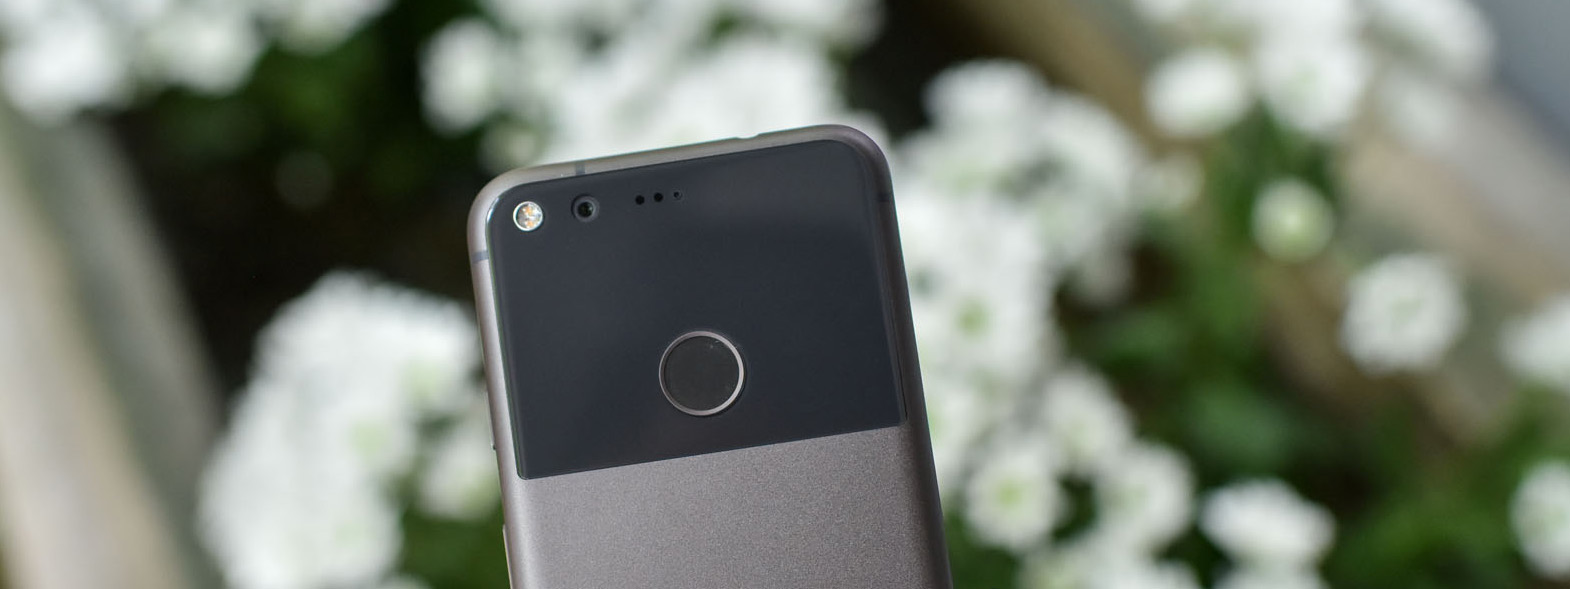 Bên cạnh 2 chiếc Pixel mới thì Google cũng đang chế tạo điện thoại Nexus mới màn hình lớn?